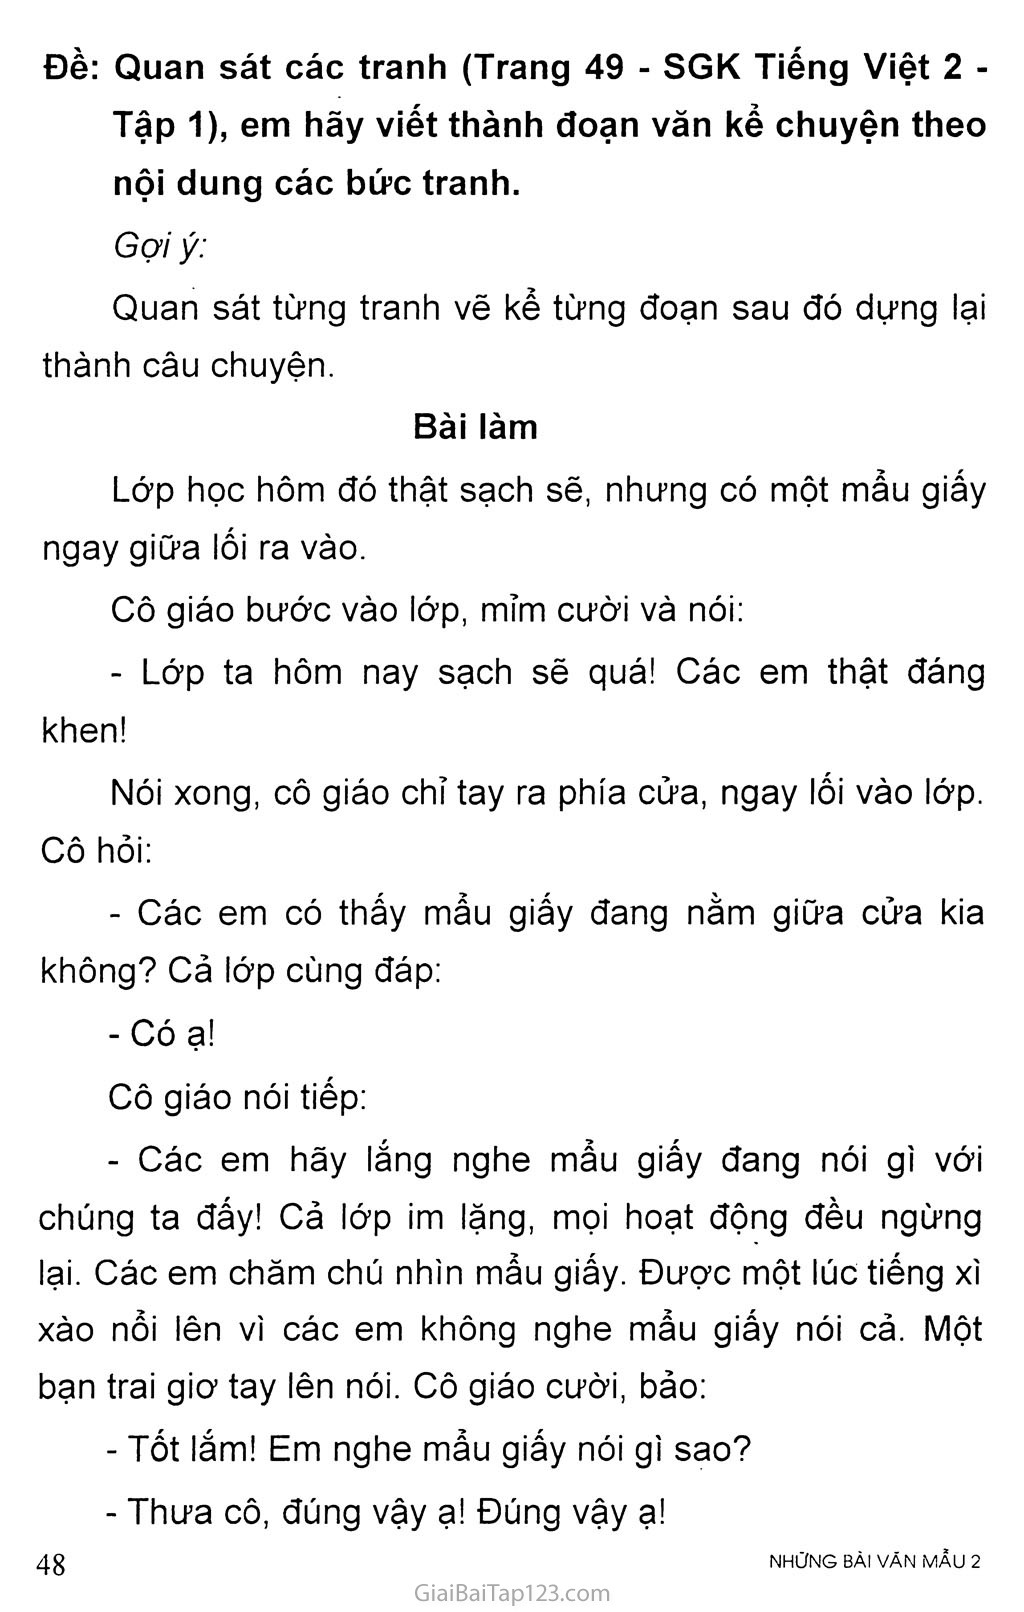 Đề: Quan sát các tranh (Trang 49 - SGK Tiếng Việt 2 - Tập 1), em hãy viết thành đoạn văn kể chuyện theo nội dung các bức tranh trang 1